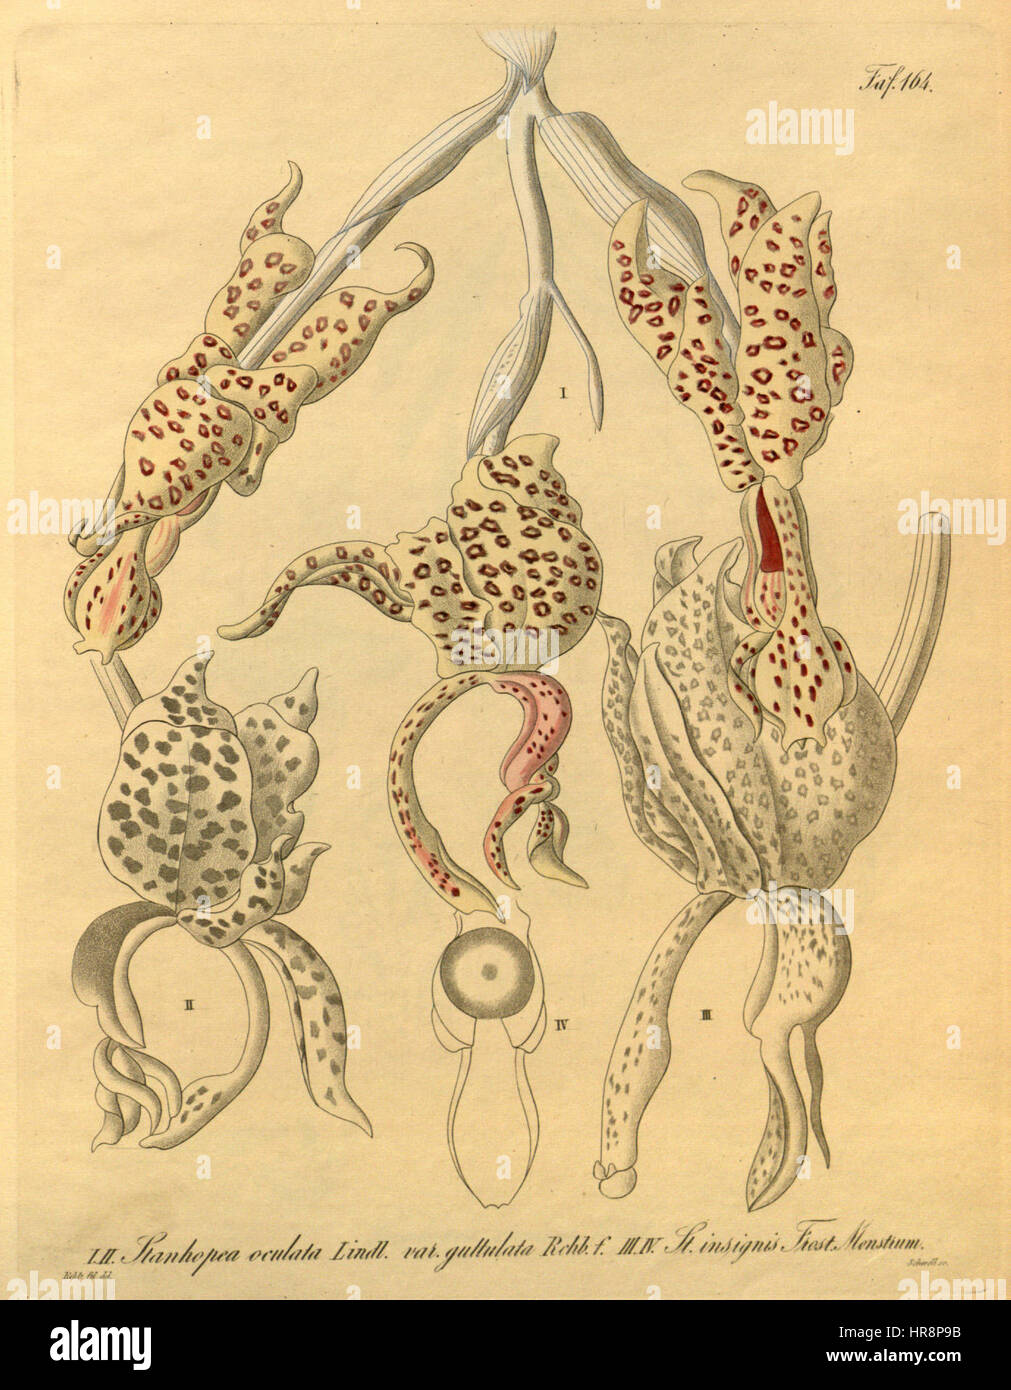 Stanhopea guttulata (as Stanhopea oculata var. guttulata) and Stanhopea insignis-Xenia 2-164 (1874) Stock Photo